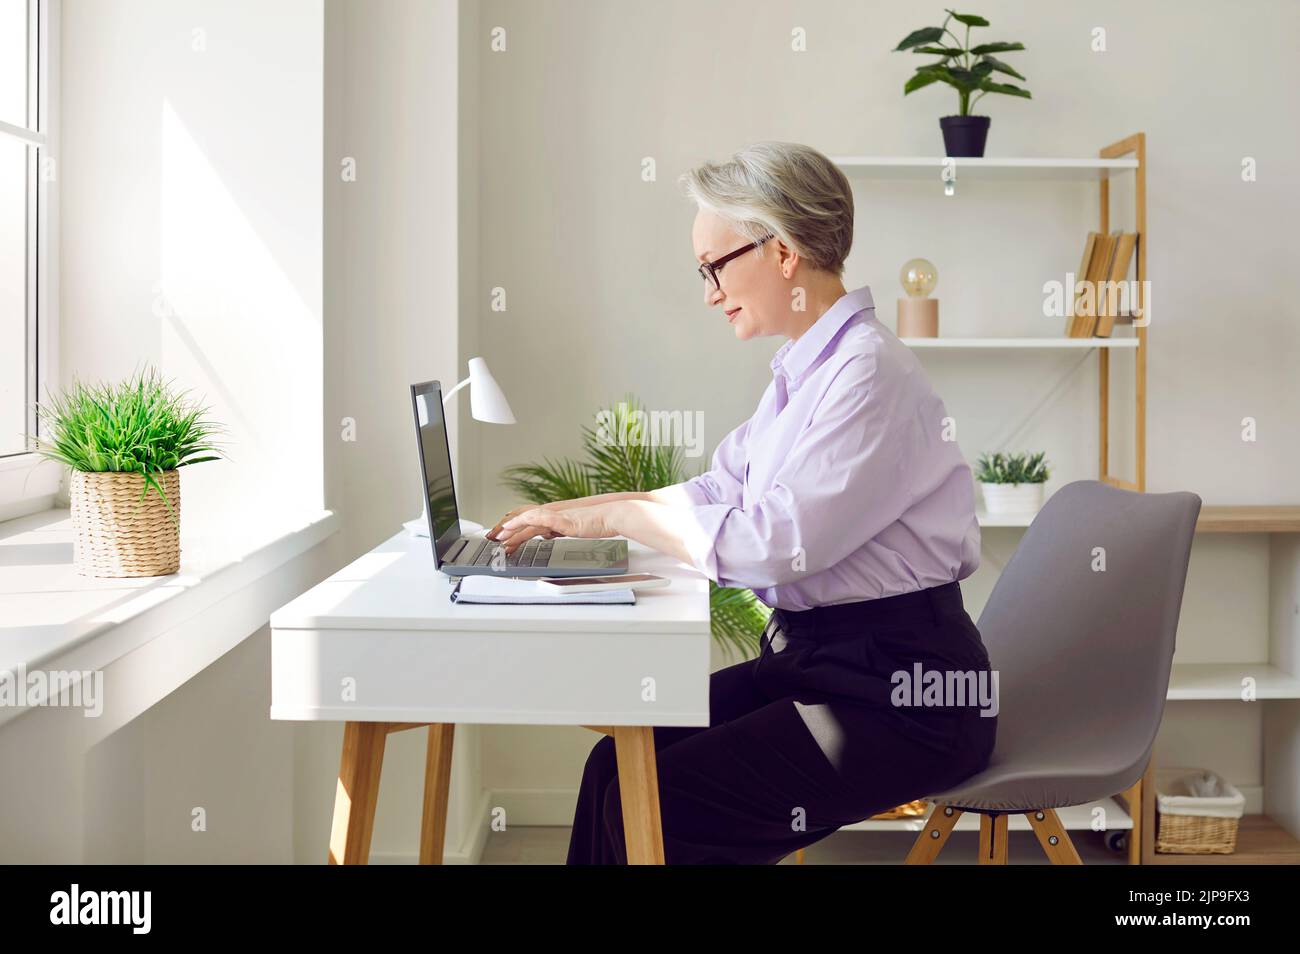 Femme d'affaires mûre travaillant sur son ordinateur portable à son bureau dans un intérieur de bureau moderne Banque D'Images